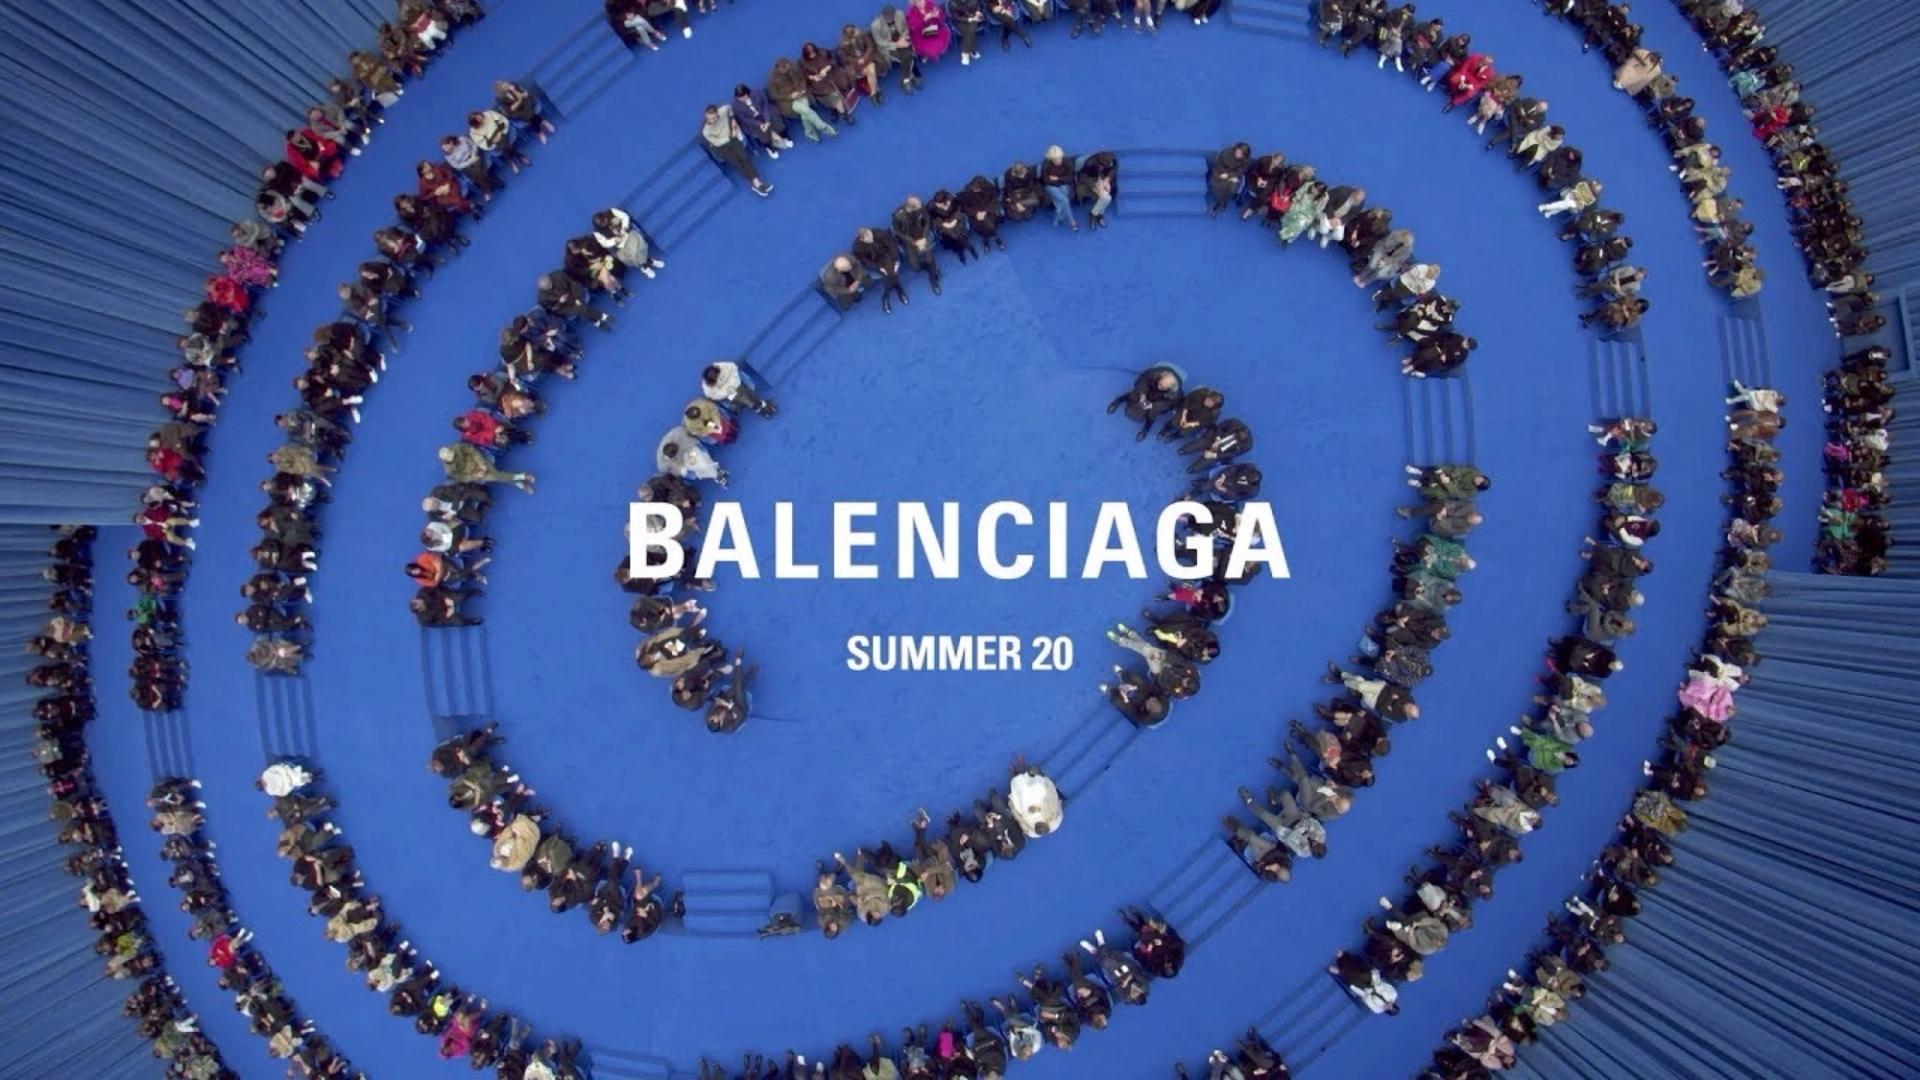 Overhead footage of the Balenciaga women's Spring/Summer 2020 show